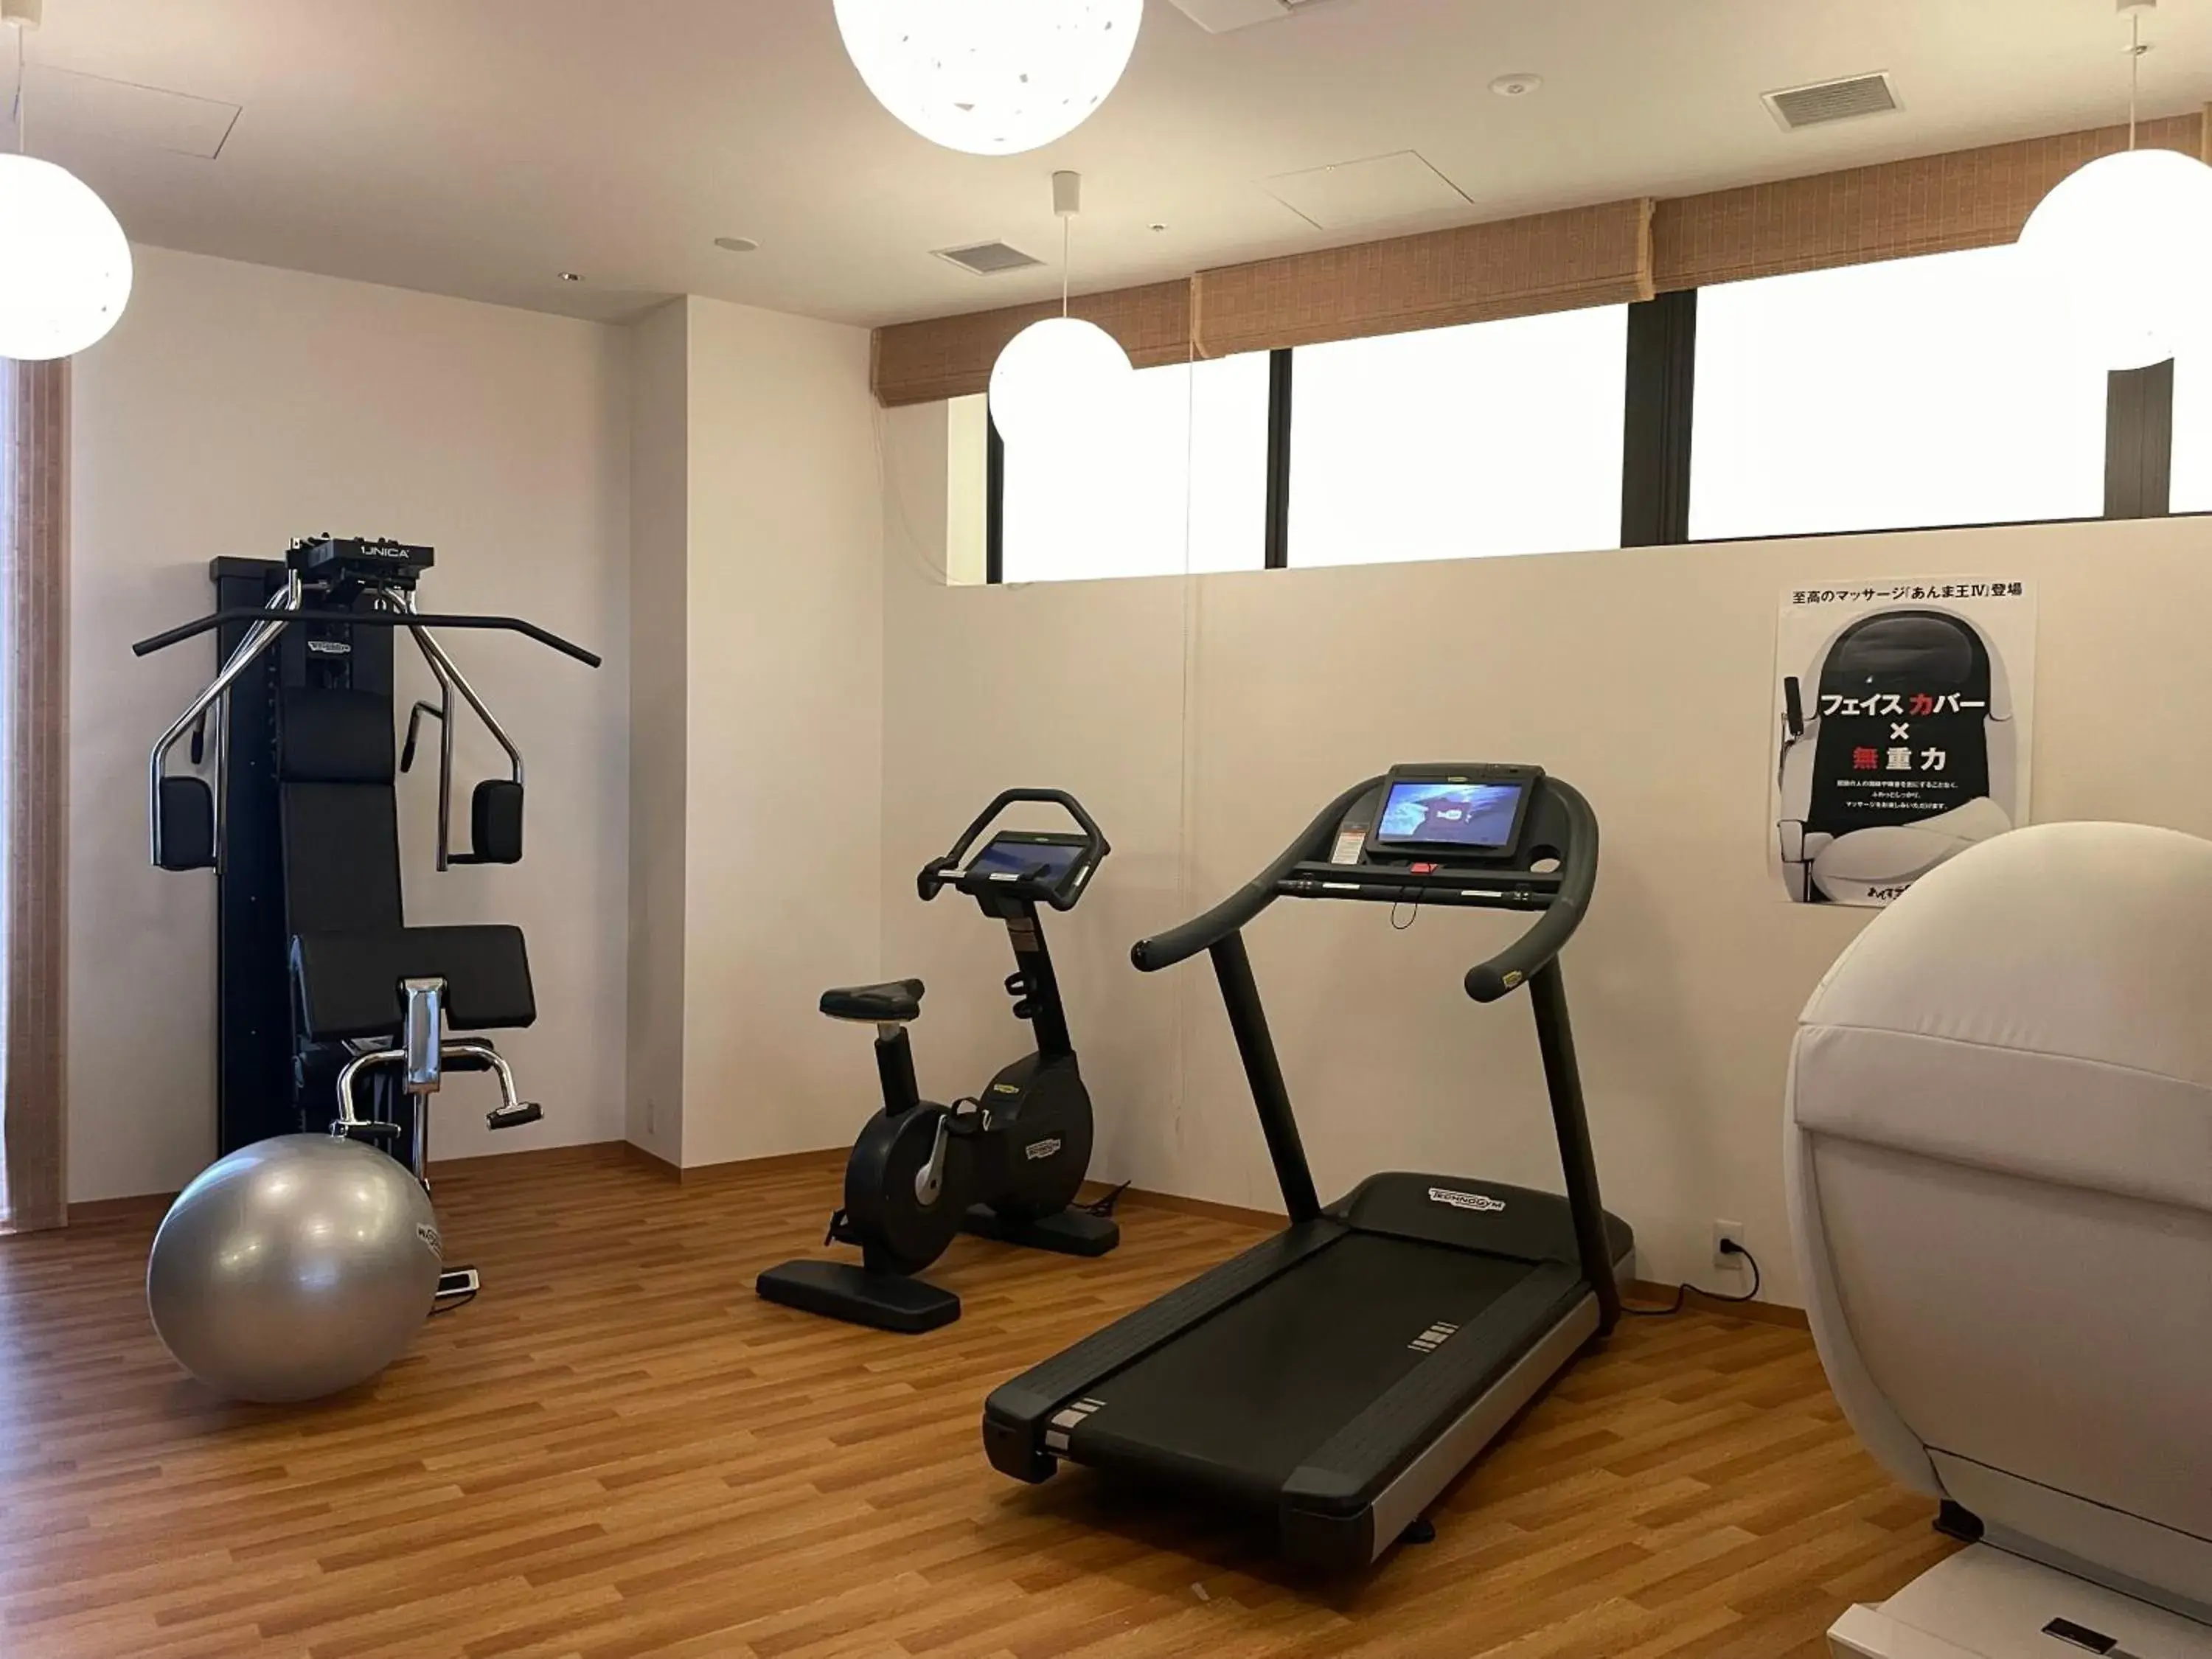 Fitness centre/facilities, Fitness Center/Facilities in Hotel Amanek Kanazawa